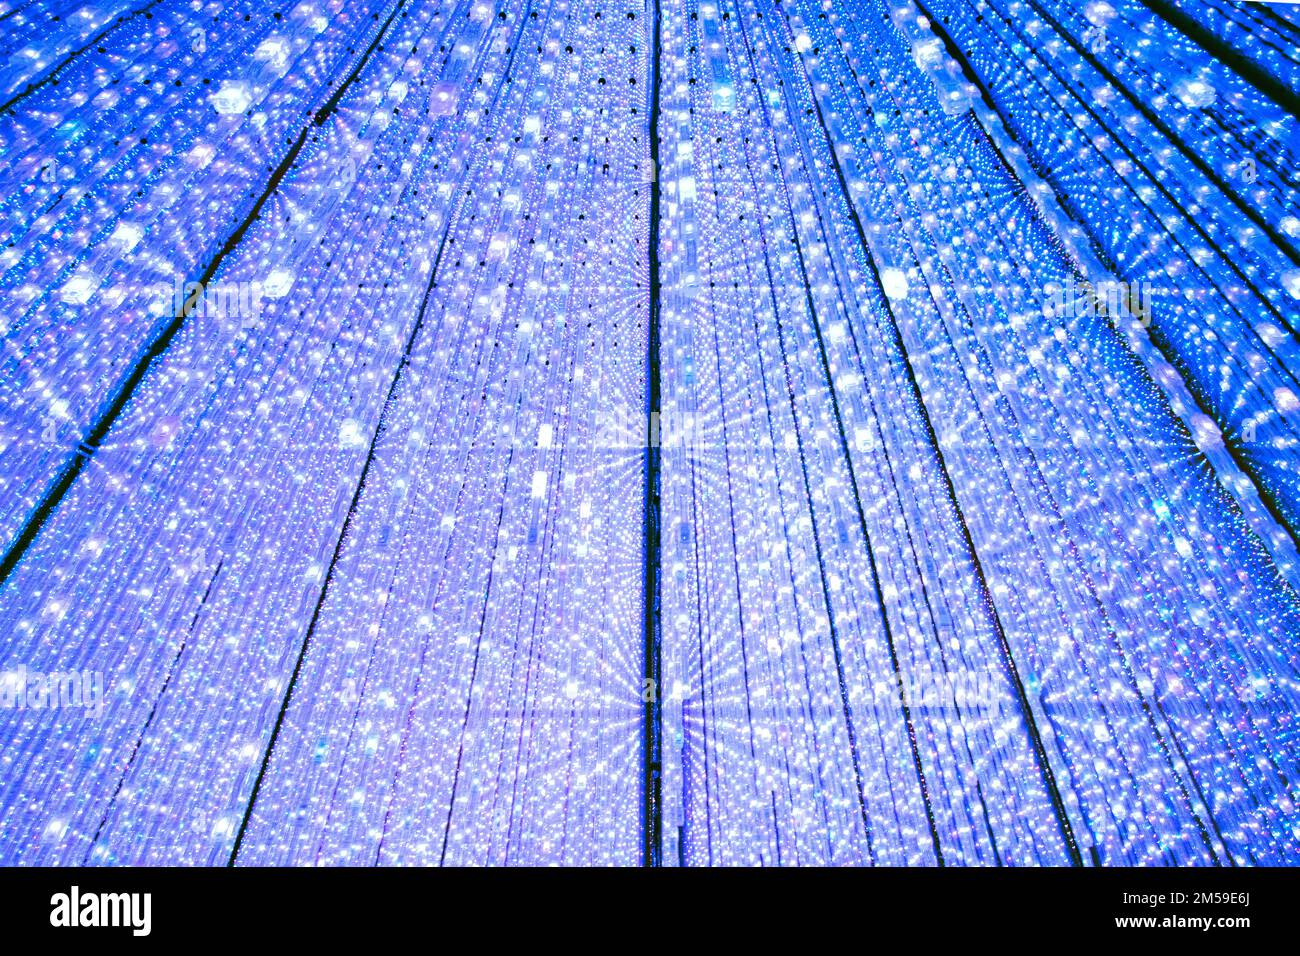 Der Infinte Crystal Universe Raum in der immersiven Kunstausstellung in TeamLab Planets, Tokio, Japan. Stockfoto